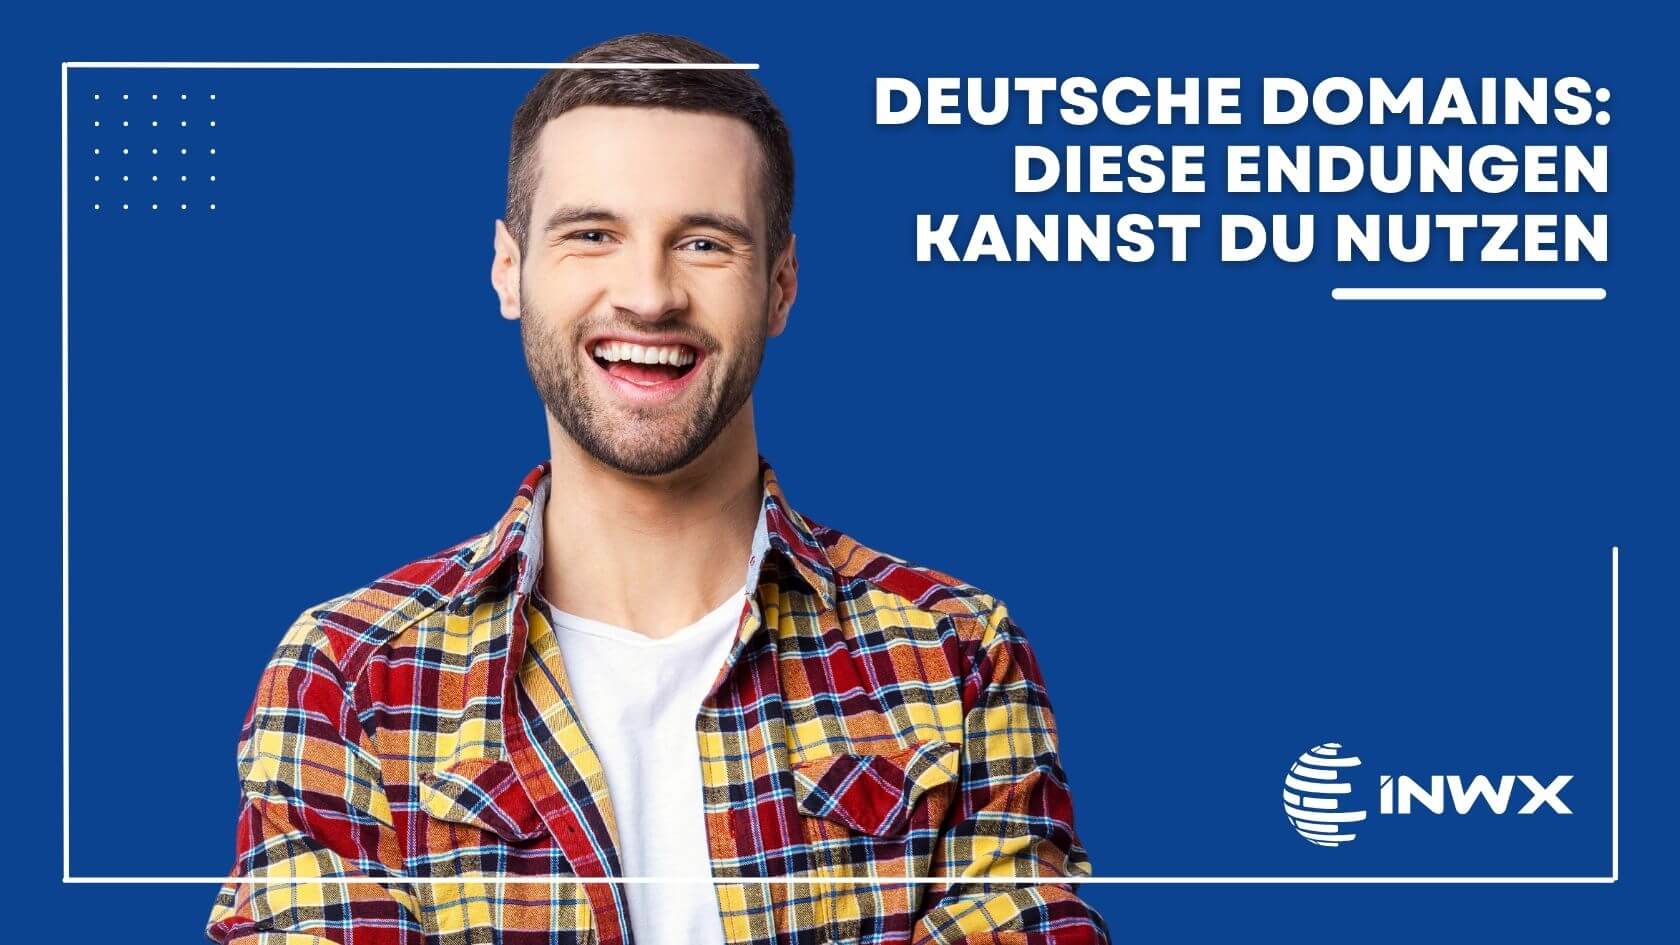 Ein Mann mit rot-gelbem Hemd lächelt. Neben ihm steht der Text "Deutsche Domains".